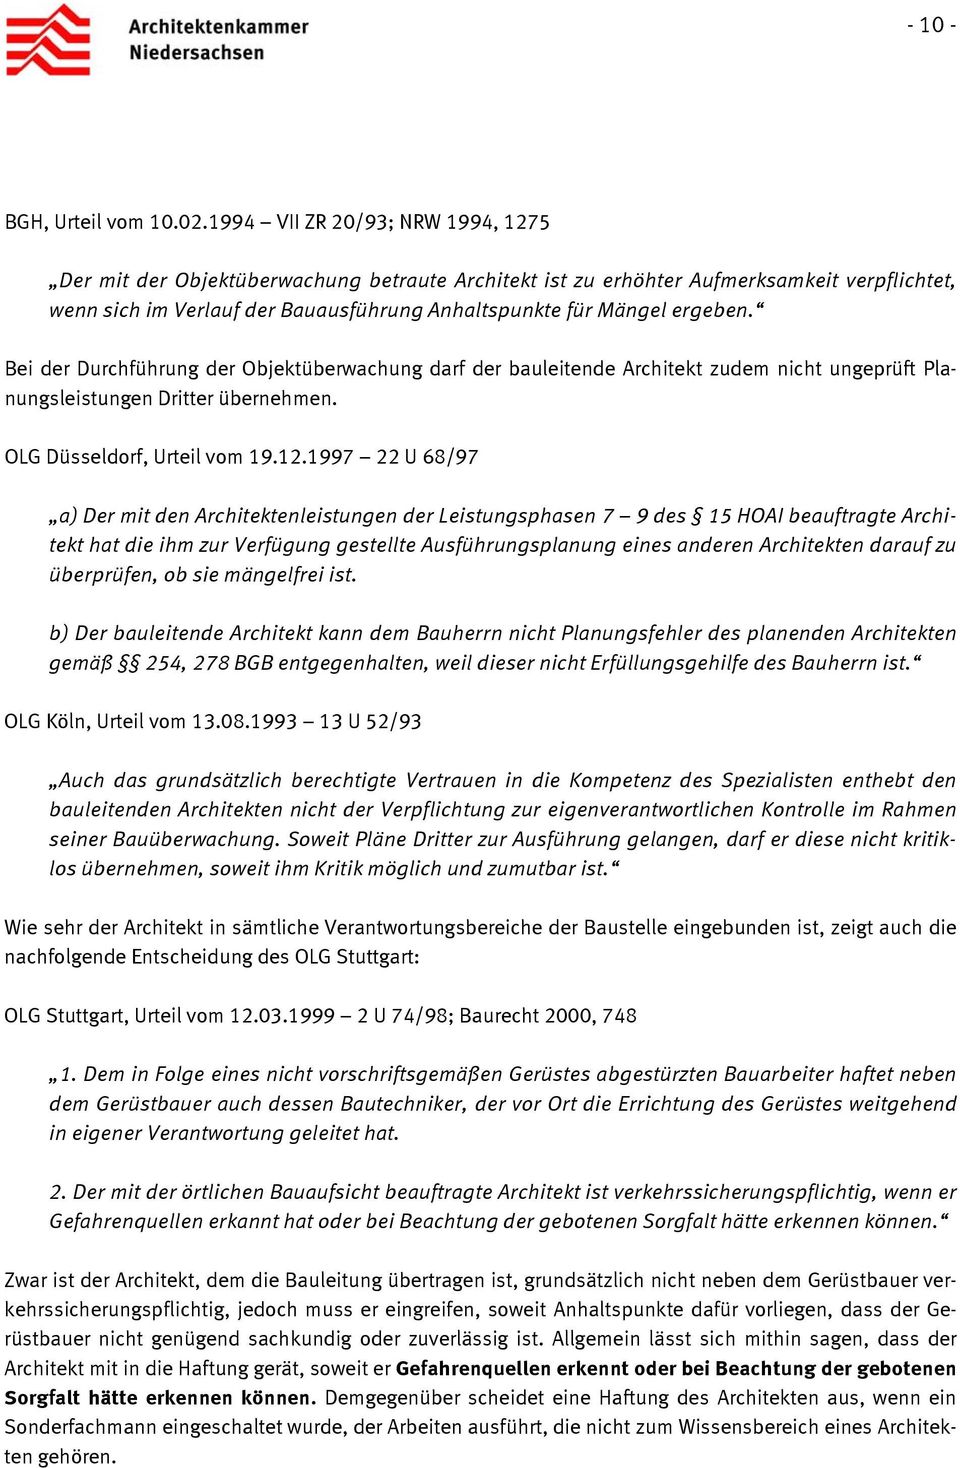 Bei der Durchführung der Objektüberwachung darf der bauleitende Architekt zudem nicht ungeprüft Planungsleistungen Dritter übernehmen. OLG Düsseldorf, Urteil vom 19.12.